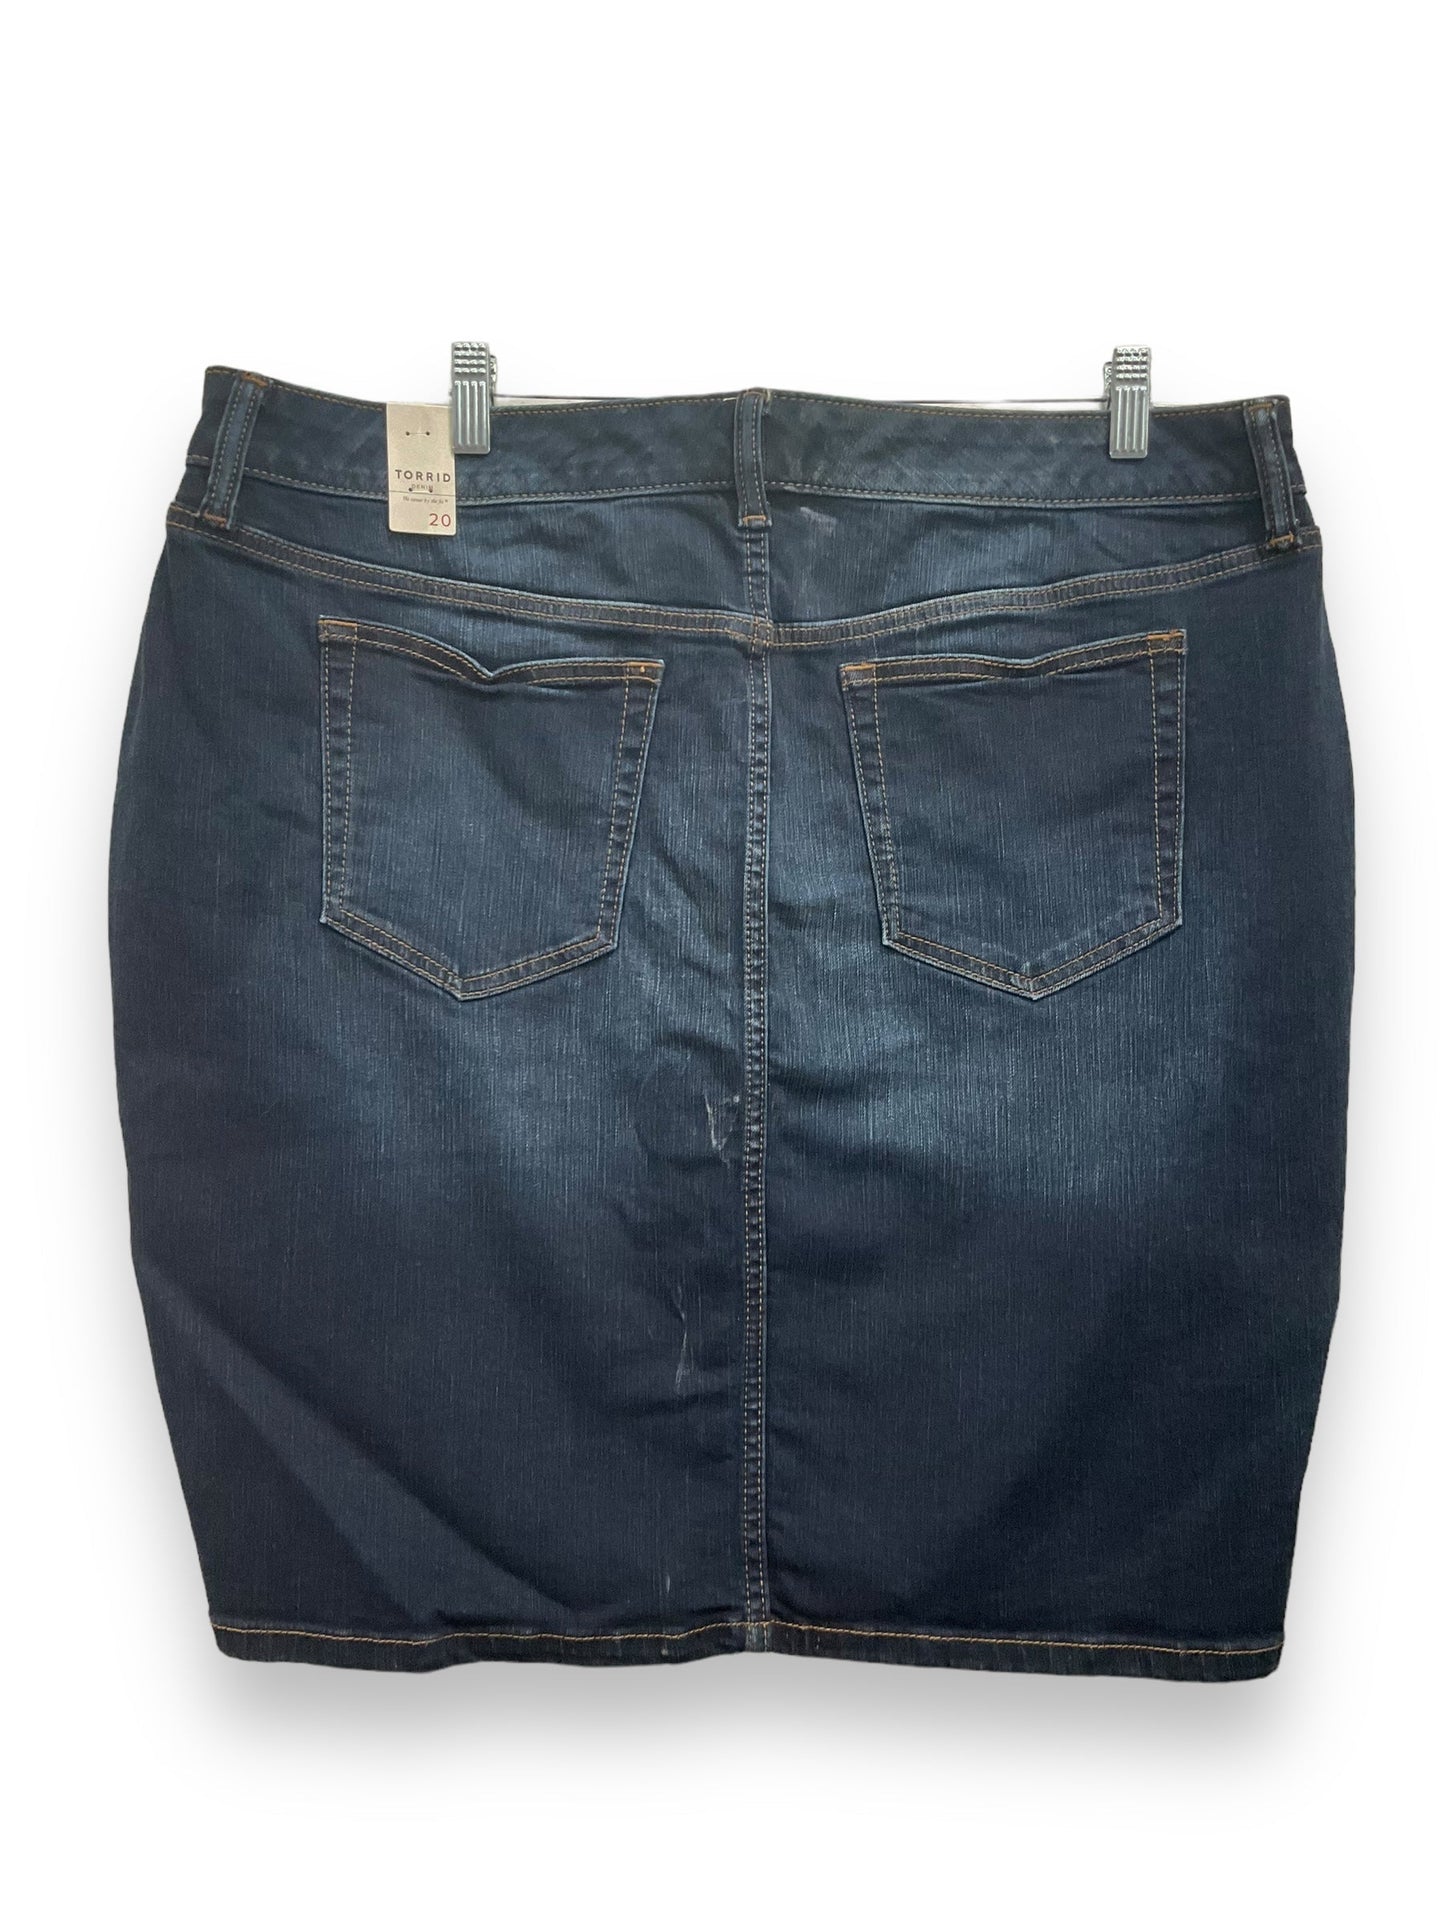 Blue Denim Skirt Mini & Short Torrid, Size 2x